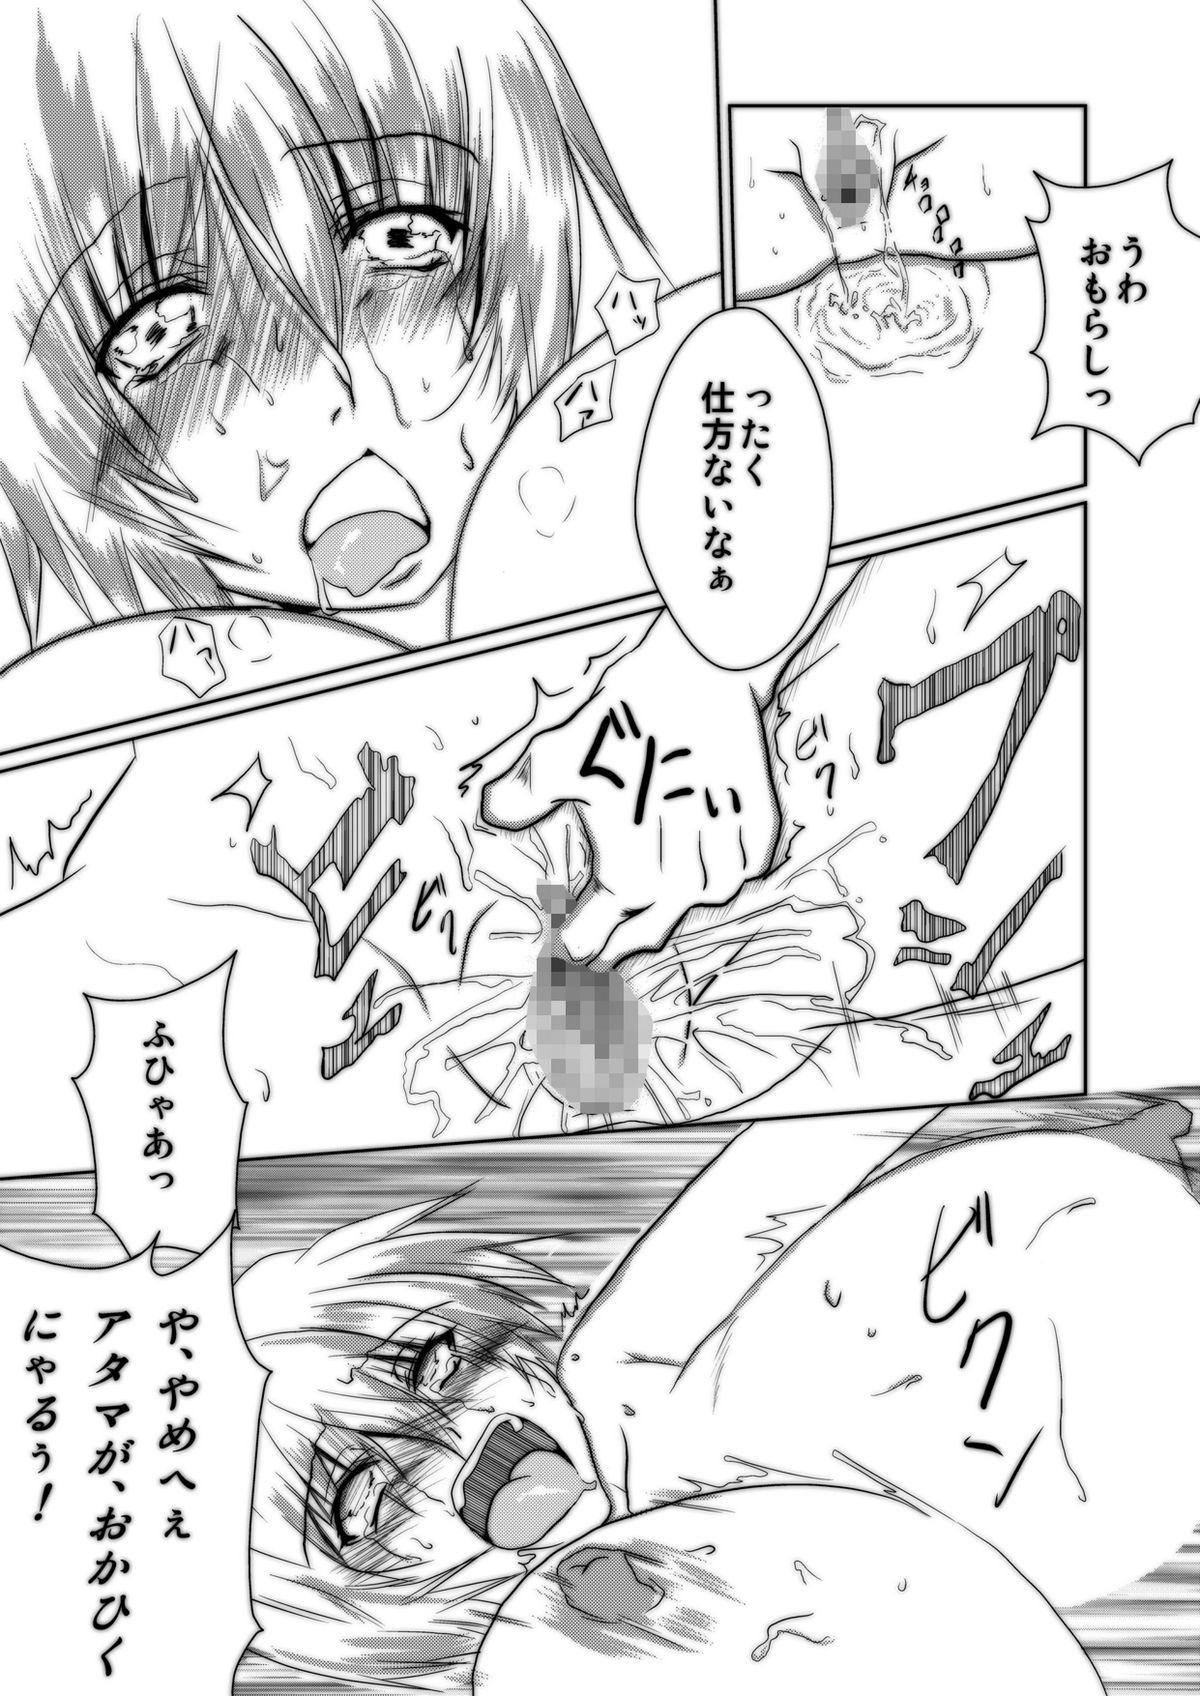 Bunda Bakunyuna Ayanami-san to no sei katsu! | Sexual activity with Rei's breasts! - Neon genesis evangelion Stepdad - Page 6